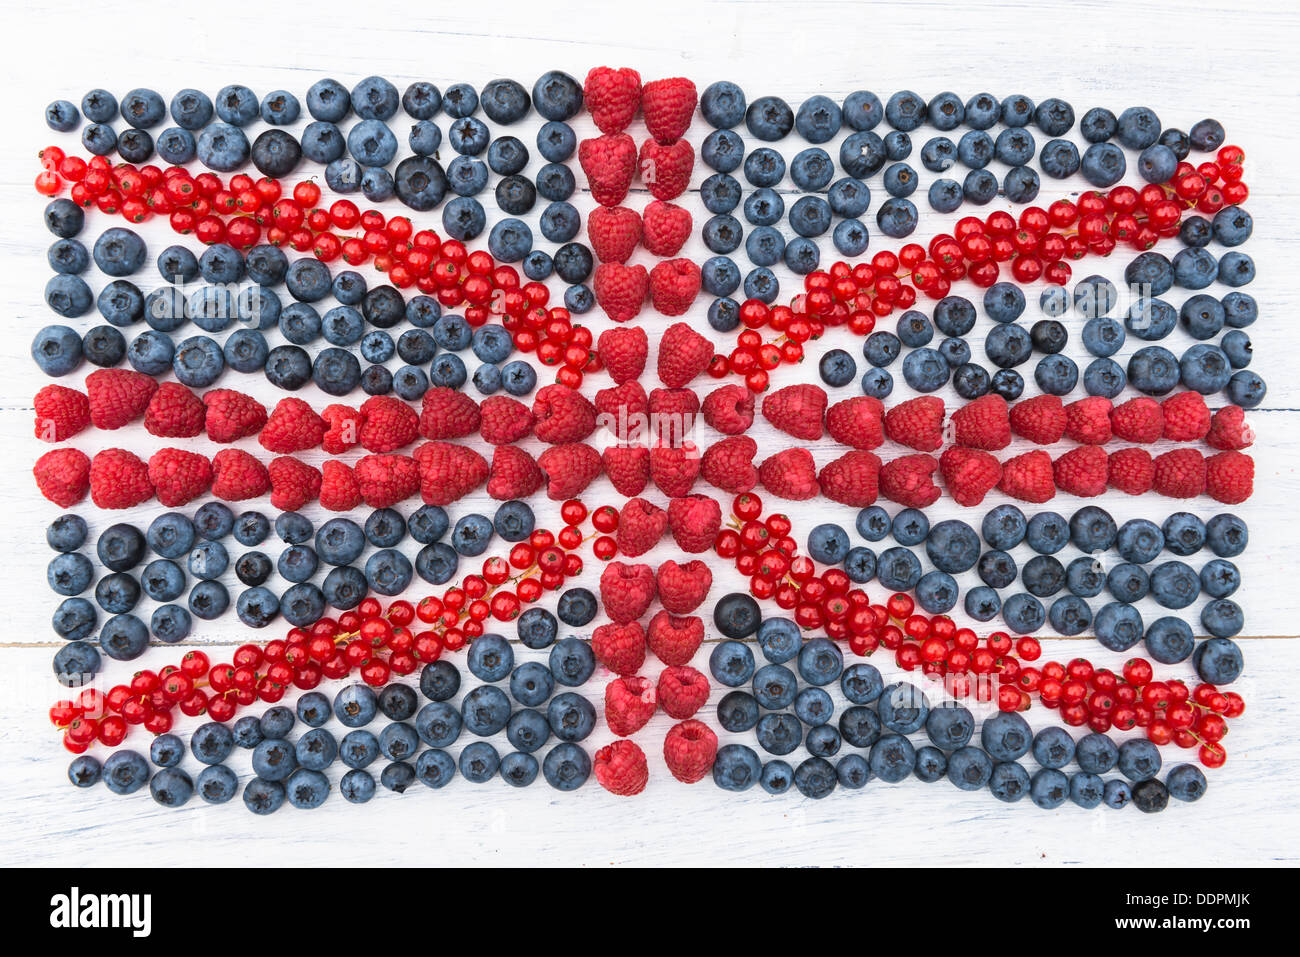 Sommer-Obst - Himbeeren, Heidelbeeren und roten Strom auf weißen Holzbrett in eine britische Flagge angeordnet Stockfoto